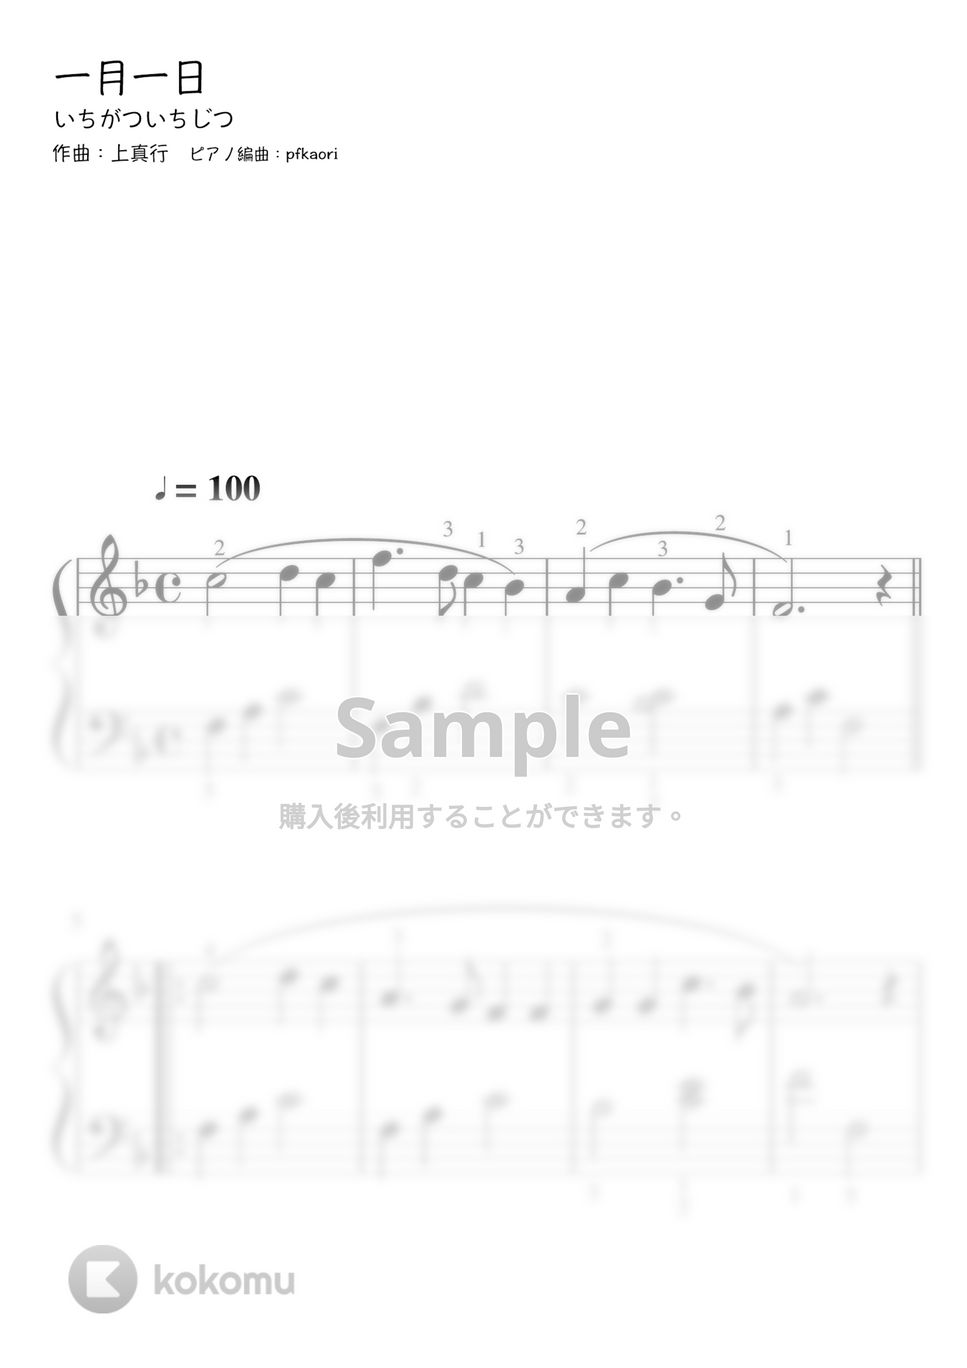 一月一日 (Fdur・ピアノソロ初級) by pfkaori